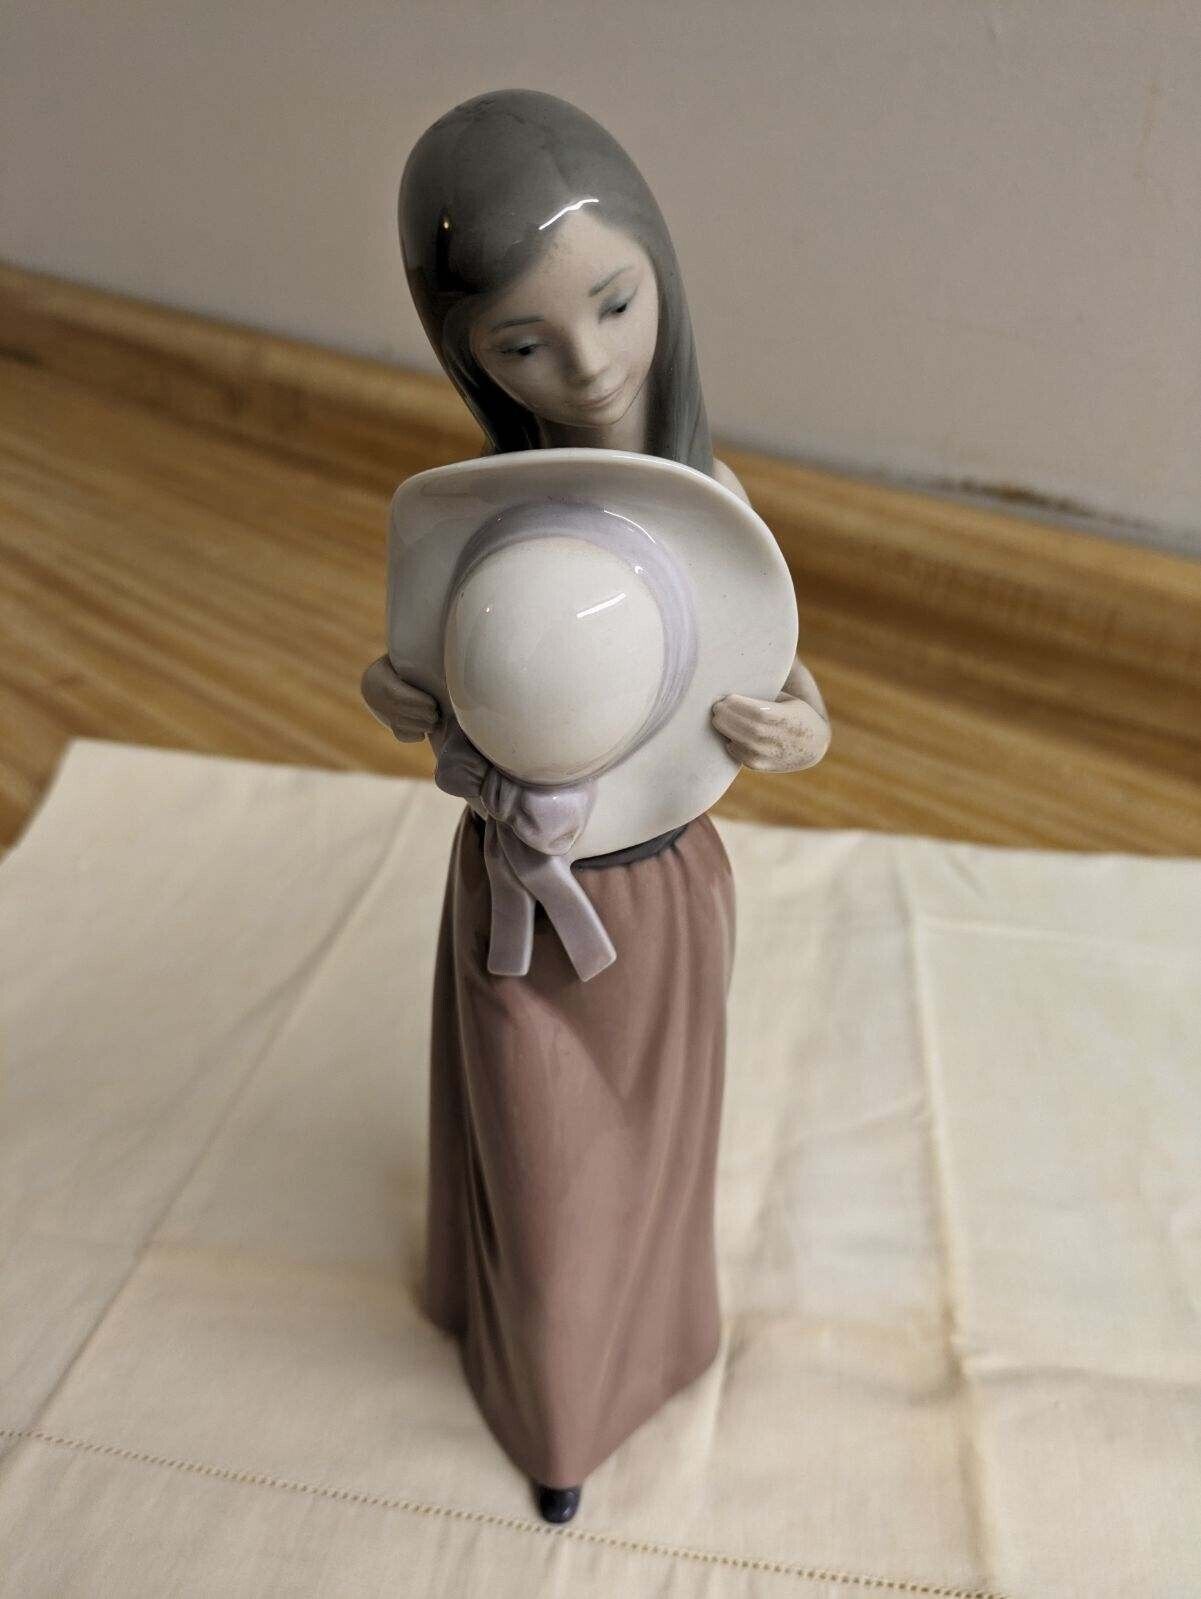 Vtg. Lladro figurine: Bashful girl with hat. 5007.